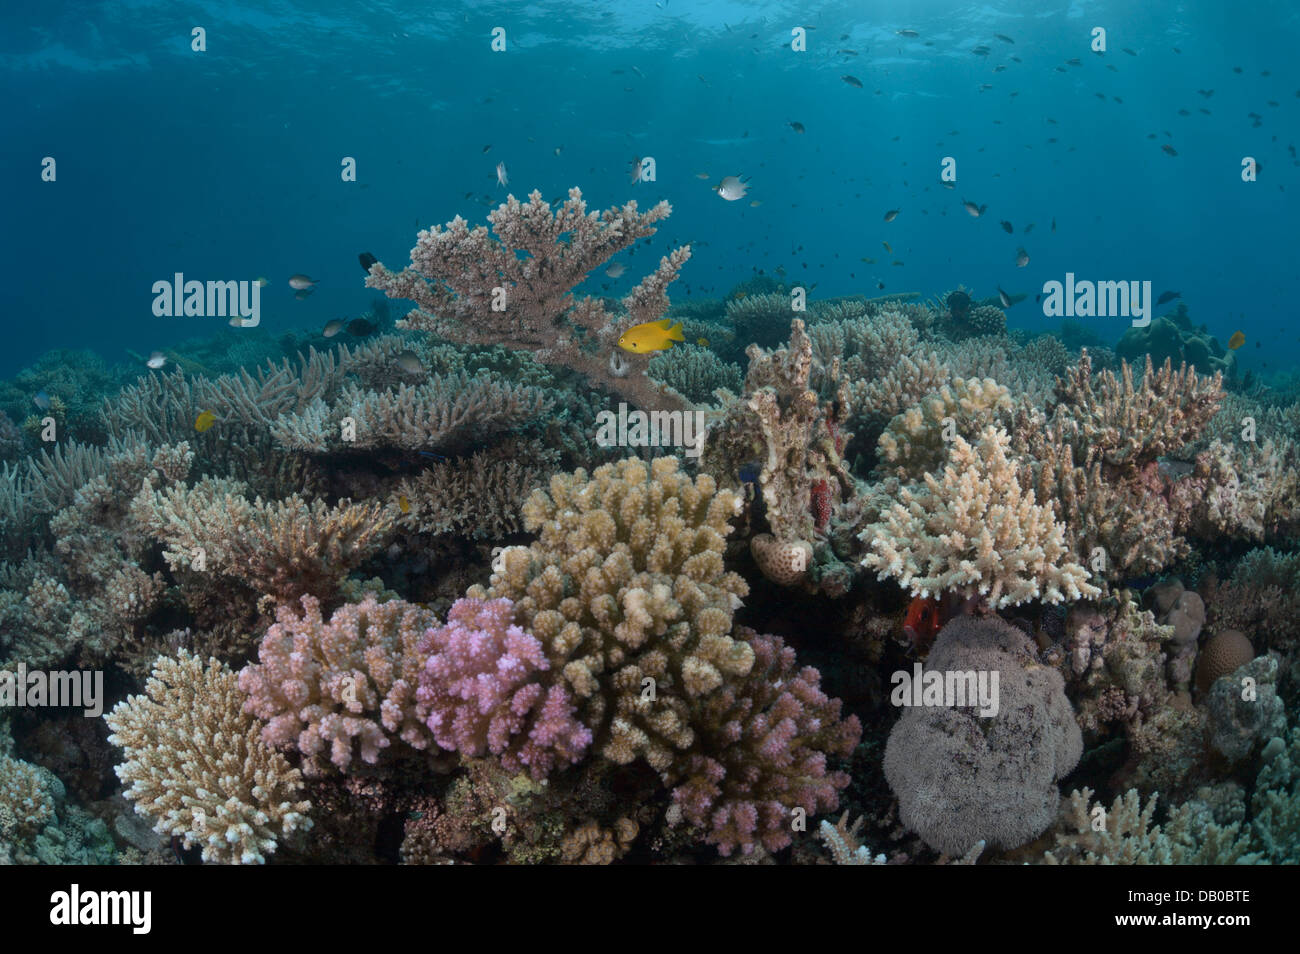 Coralli e spugne creare splendide formazioni in acque del Mare Rosso. Alcuni coralli sono così colorati che sembra un tappeto. Foto Stock